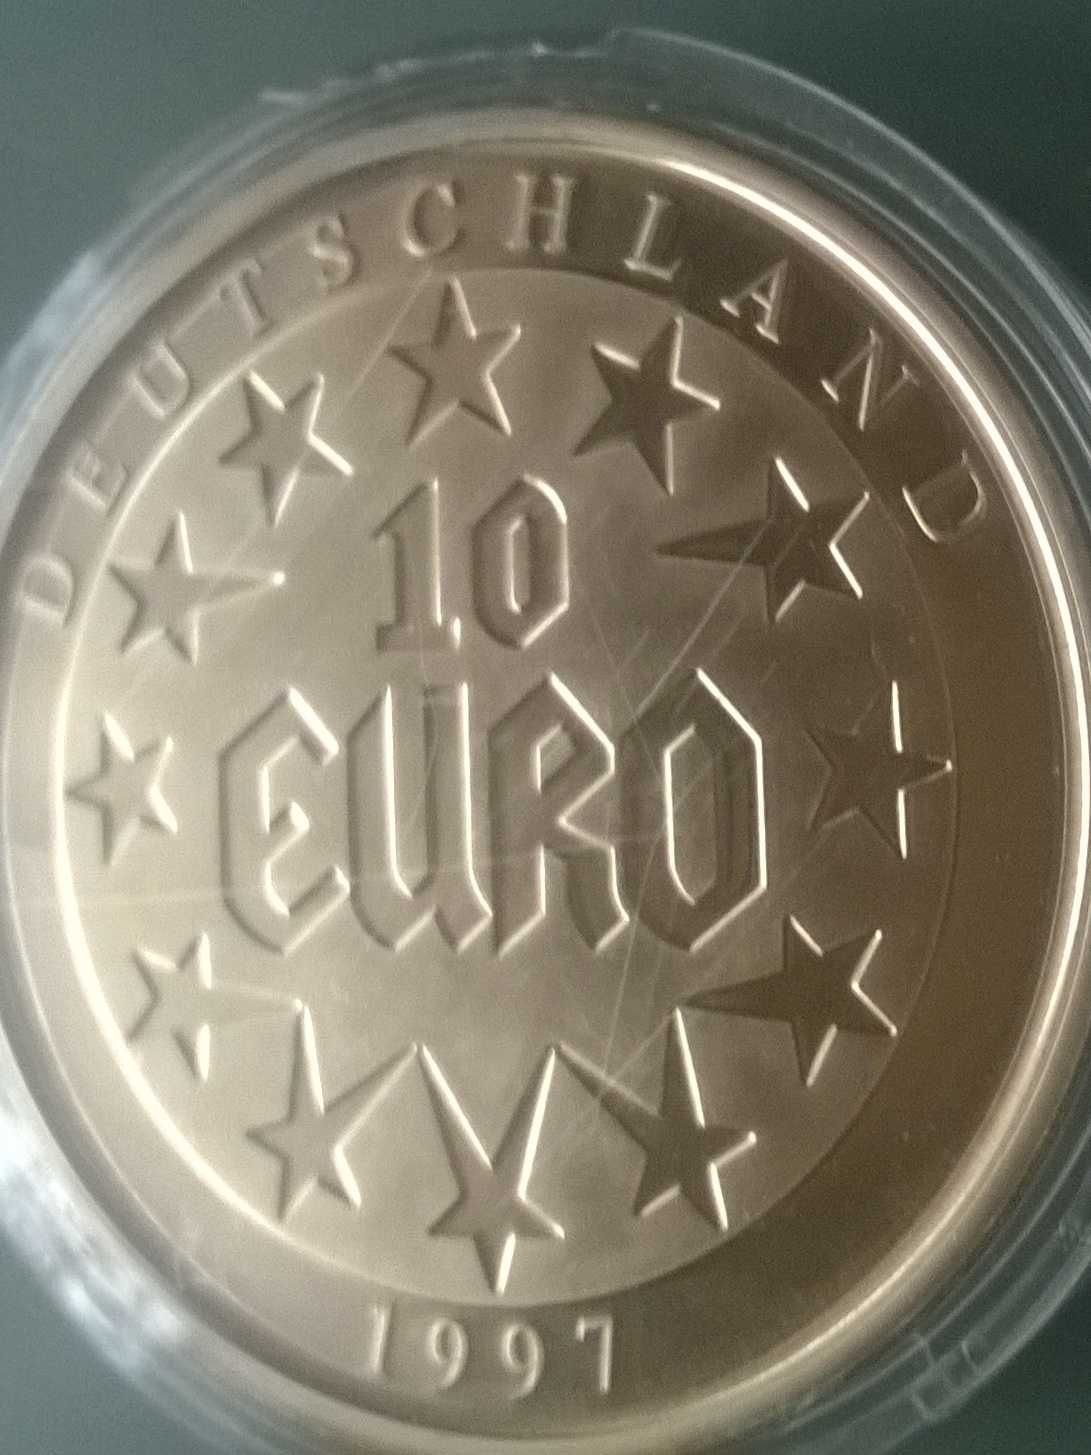 Euro Strefa Kolekcjonerska Moneta